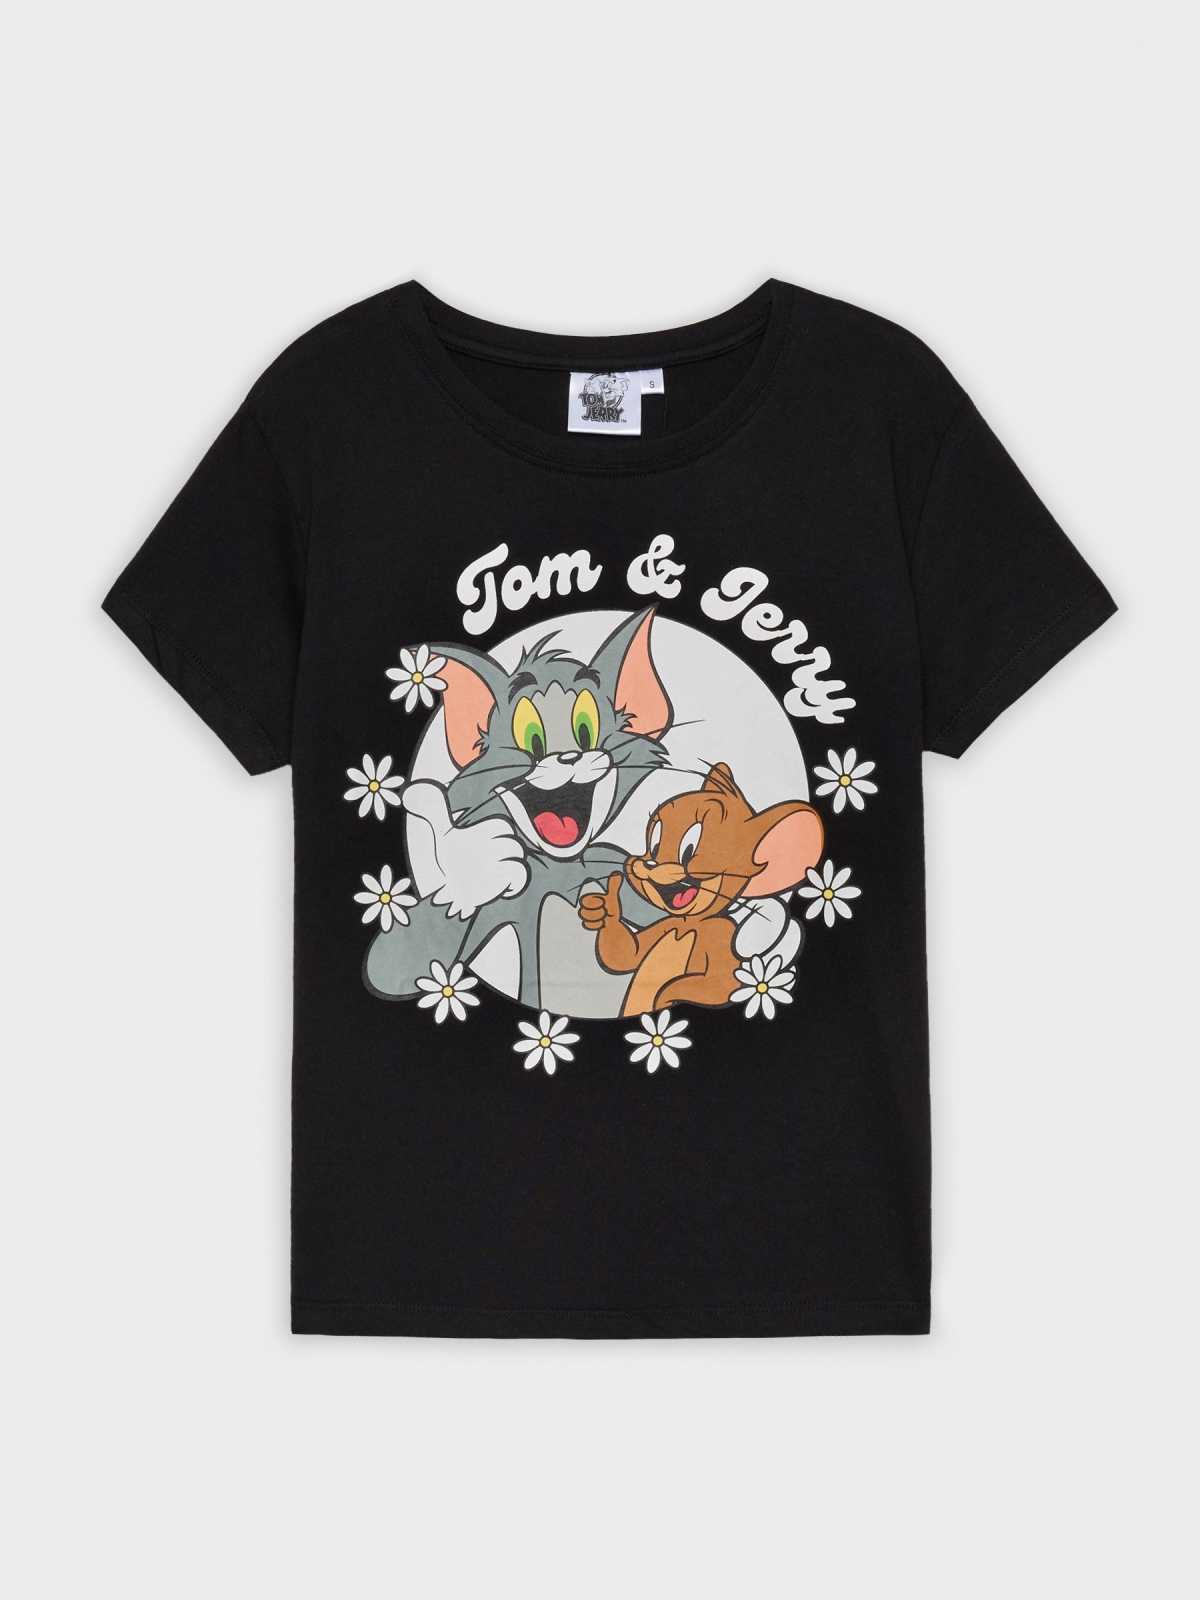  Camiseta Tom & Jerry negro